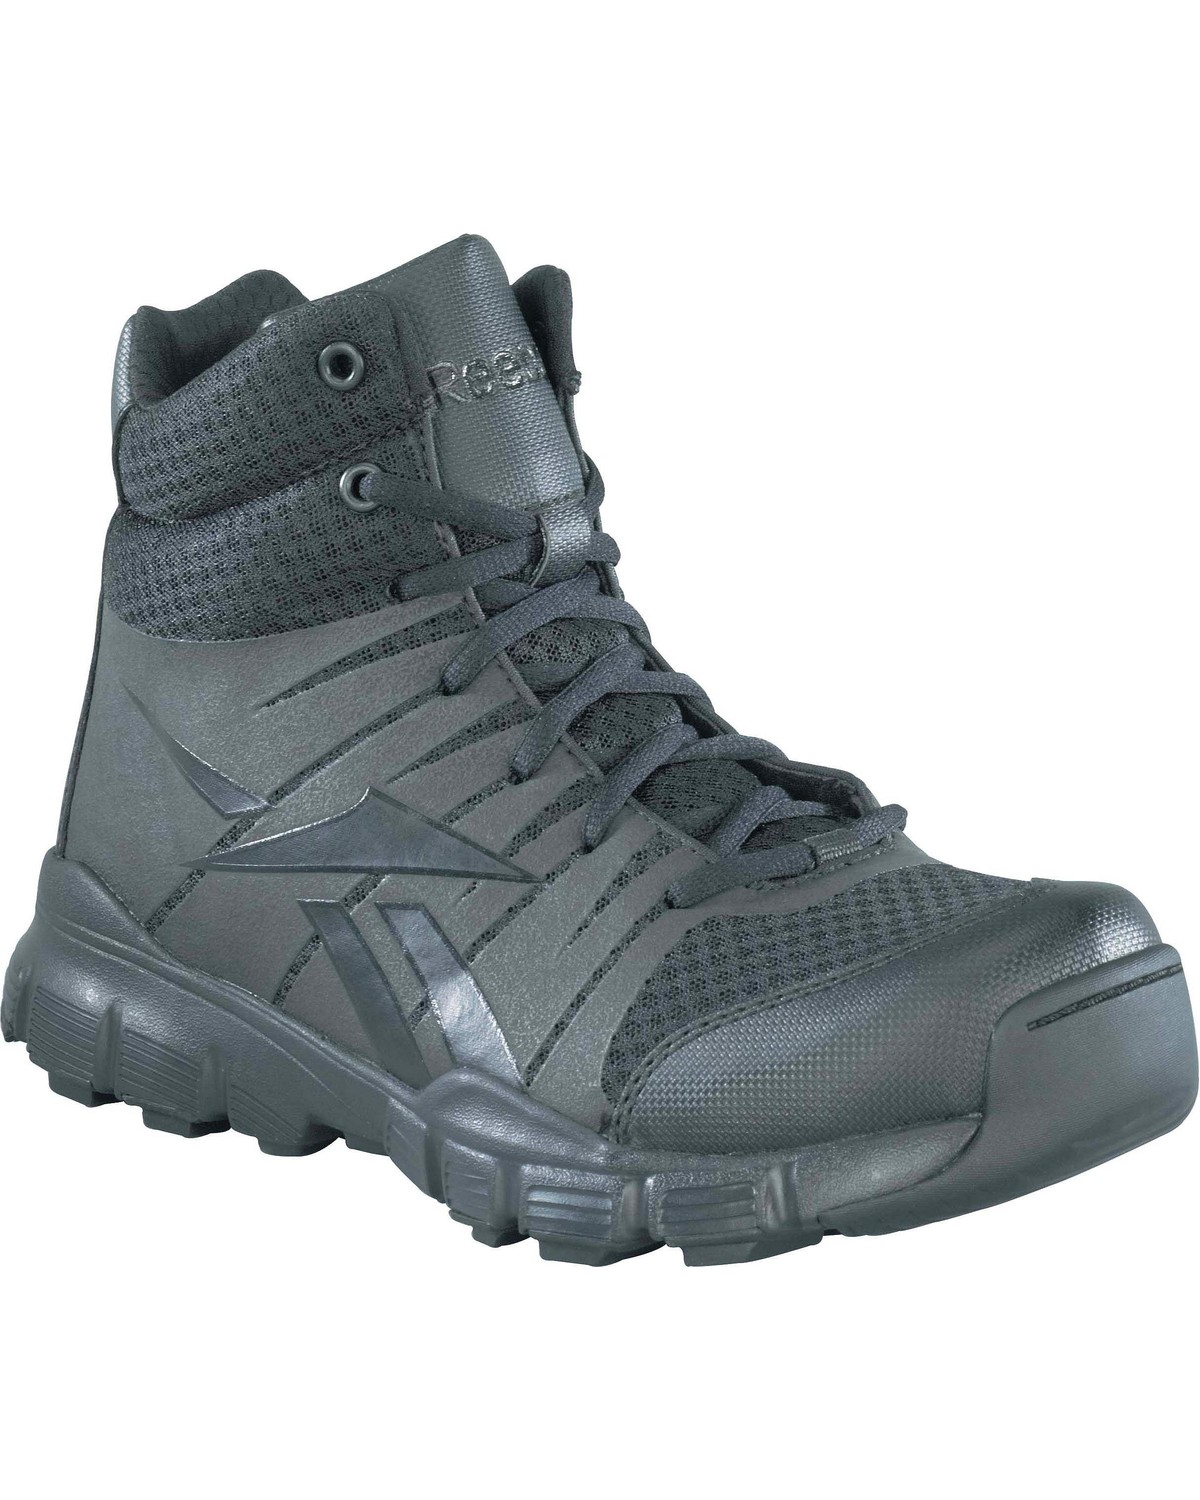 Reebok Men's Dauntless Tactical Side-Zip Work Boots